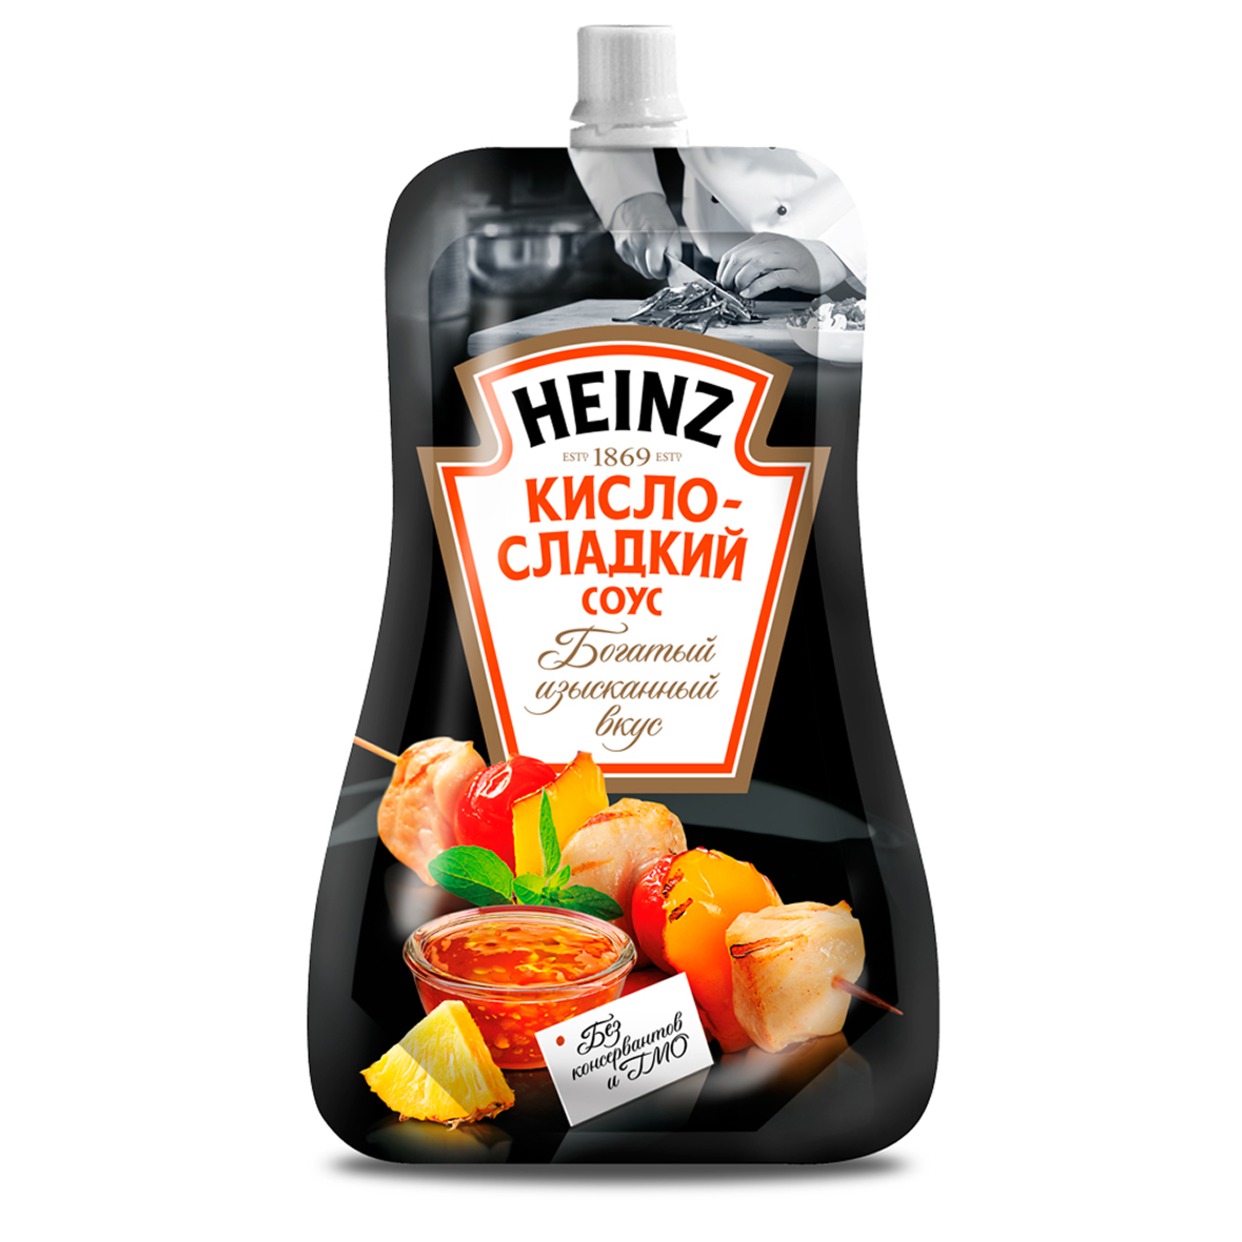 Соус Heinz, кисло-сладкий, 230 г по акции в Пятерочке